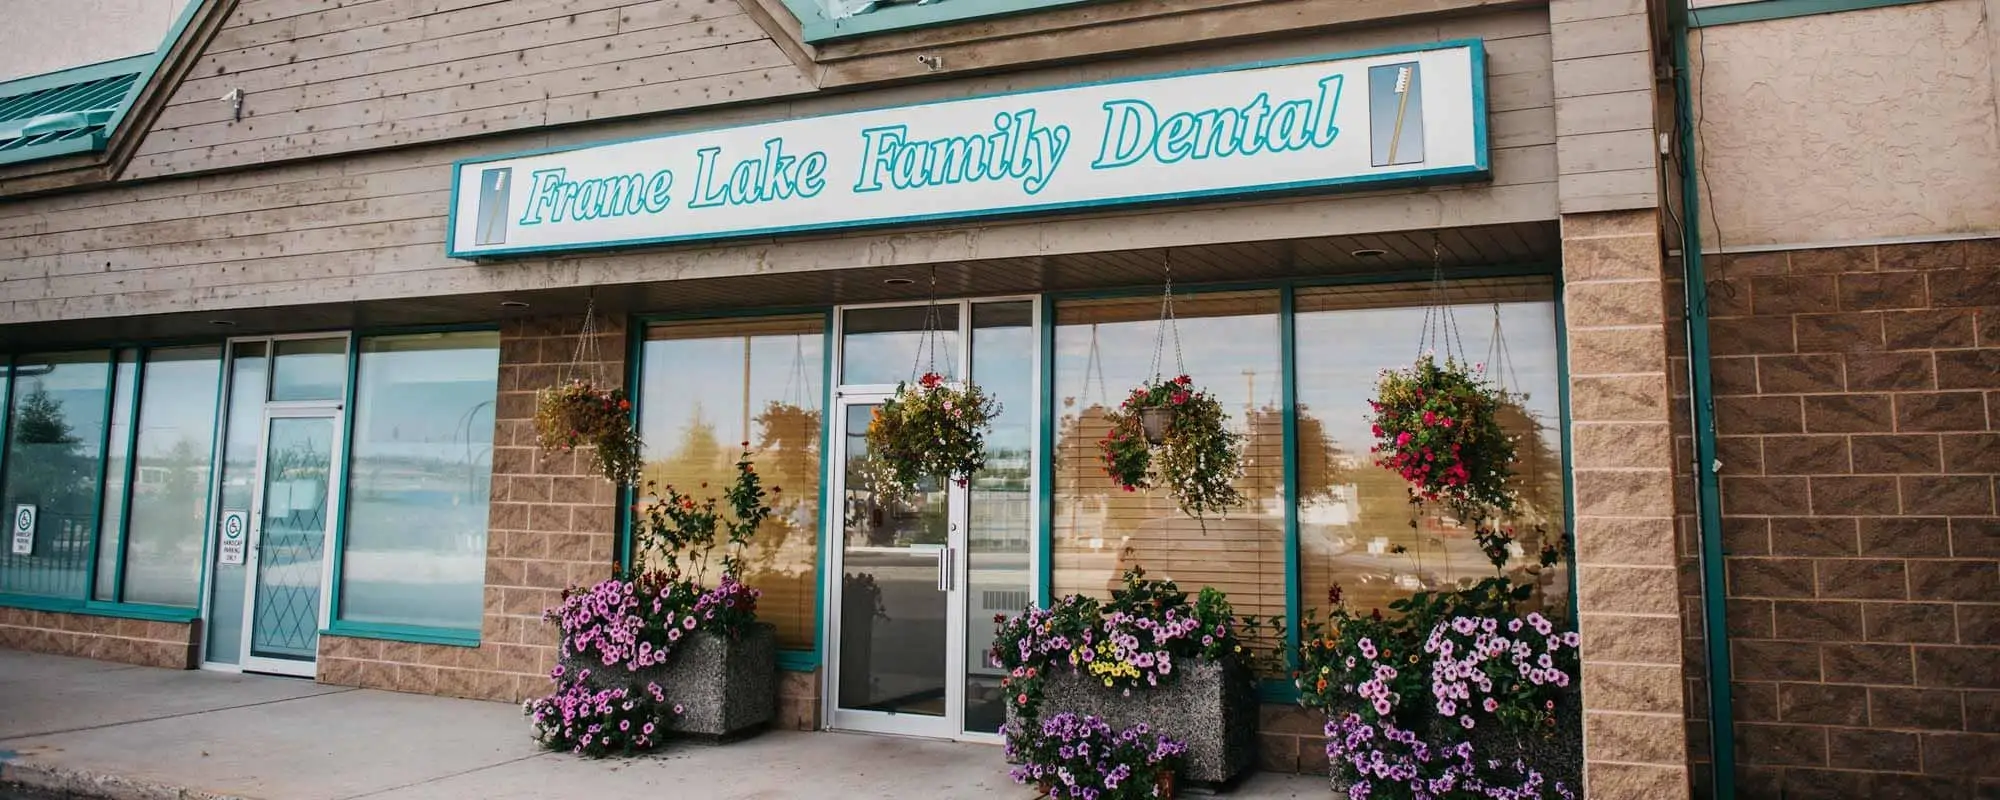 Frame Lake Family Dental